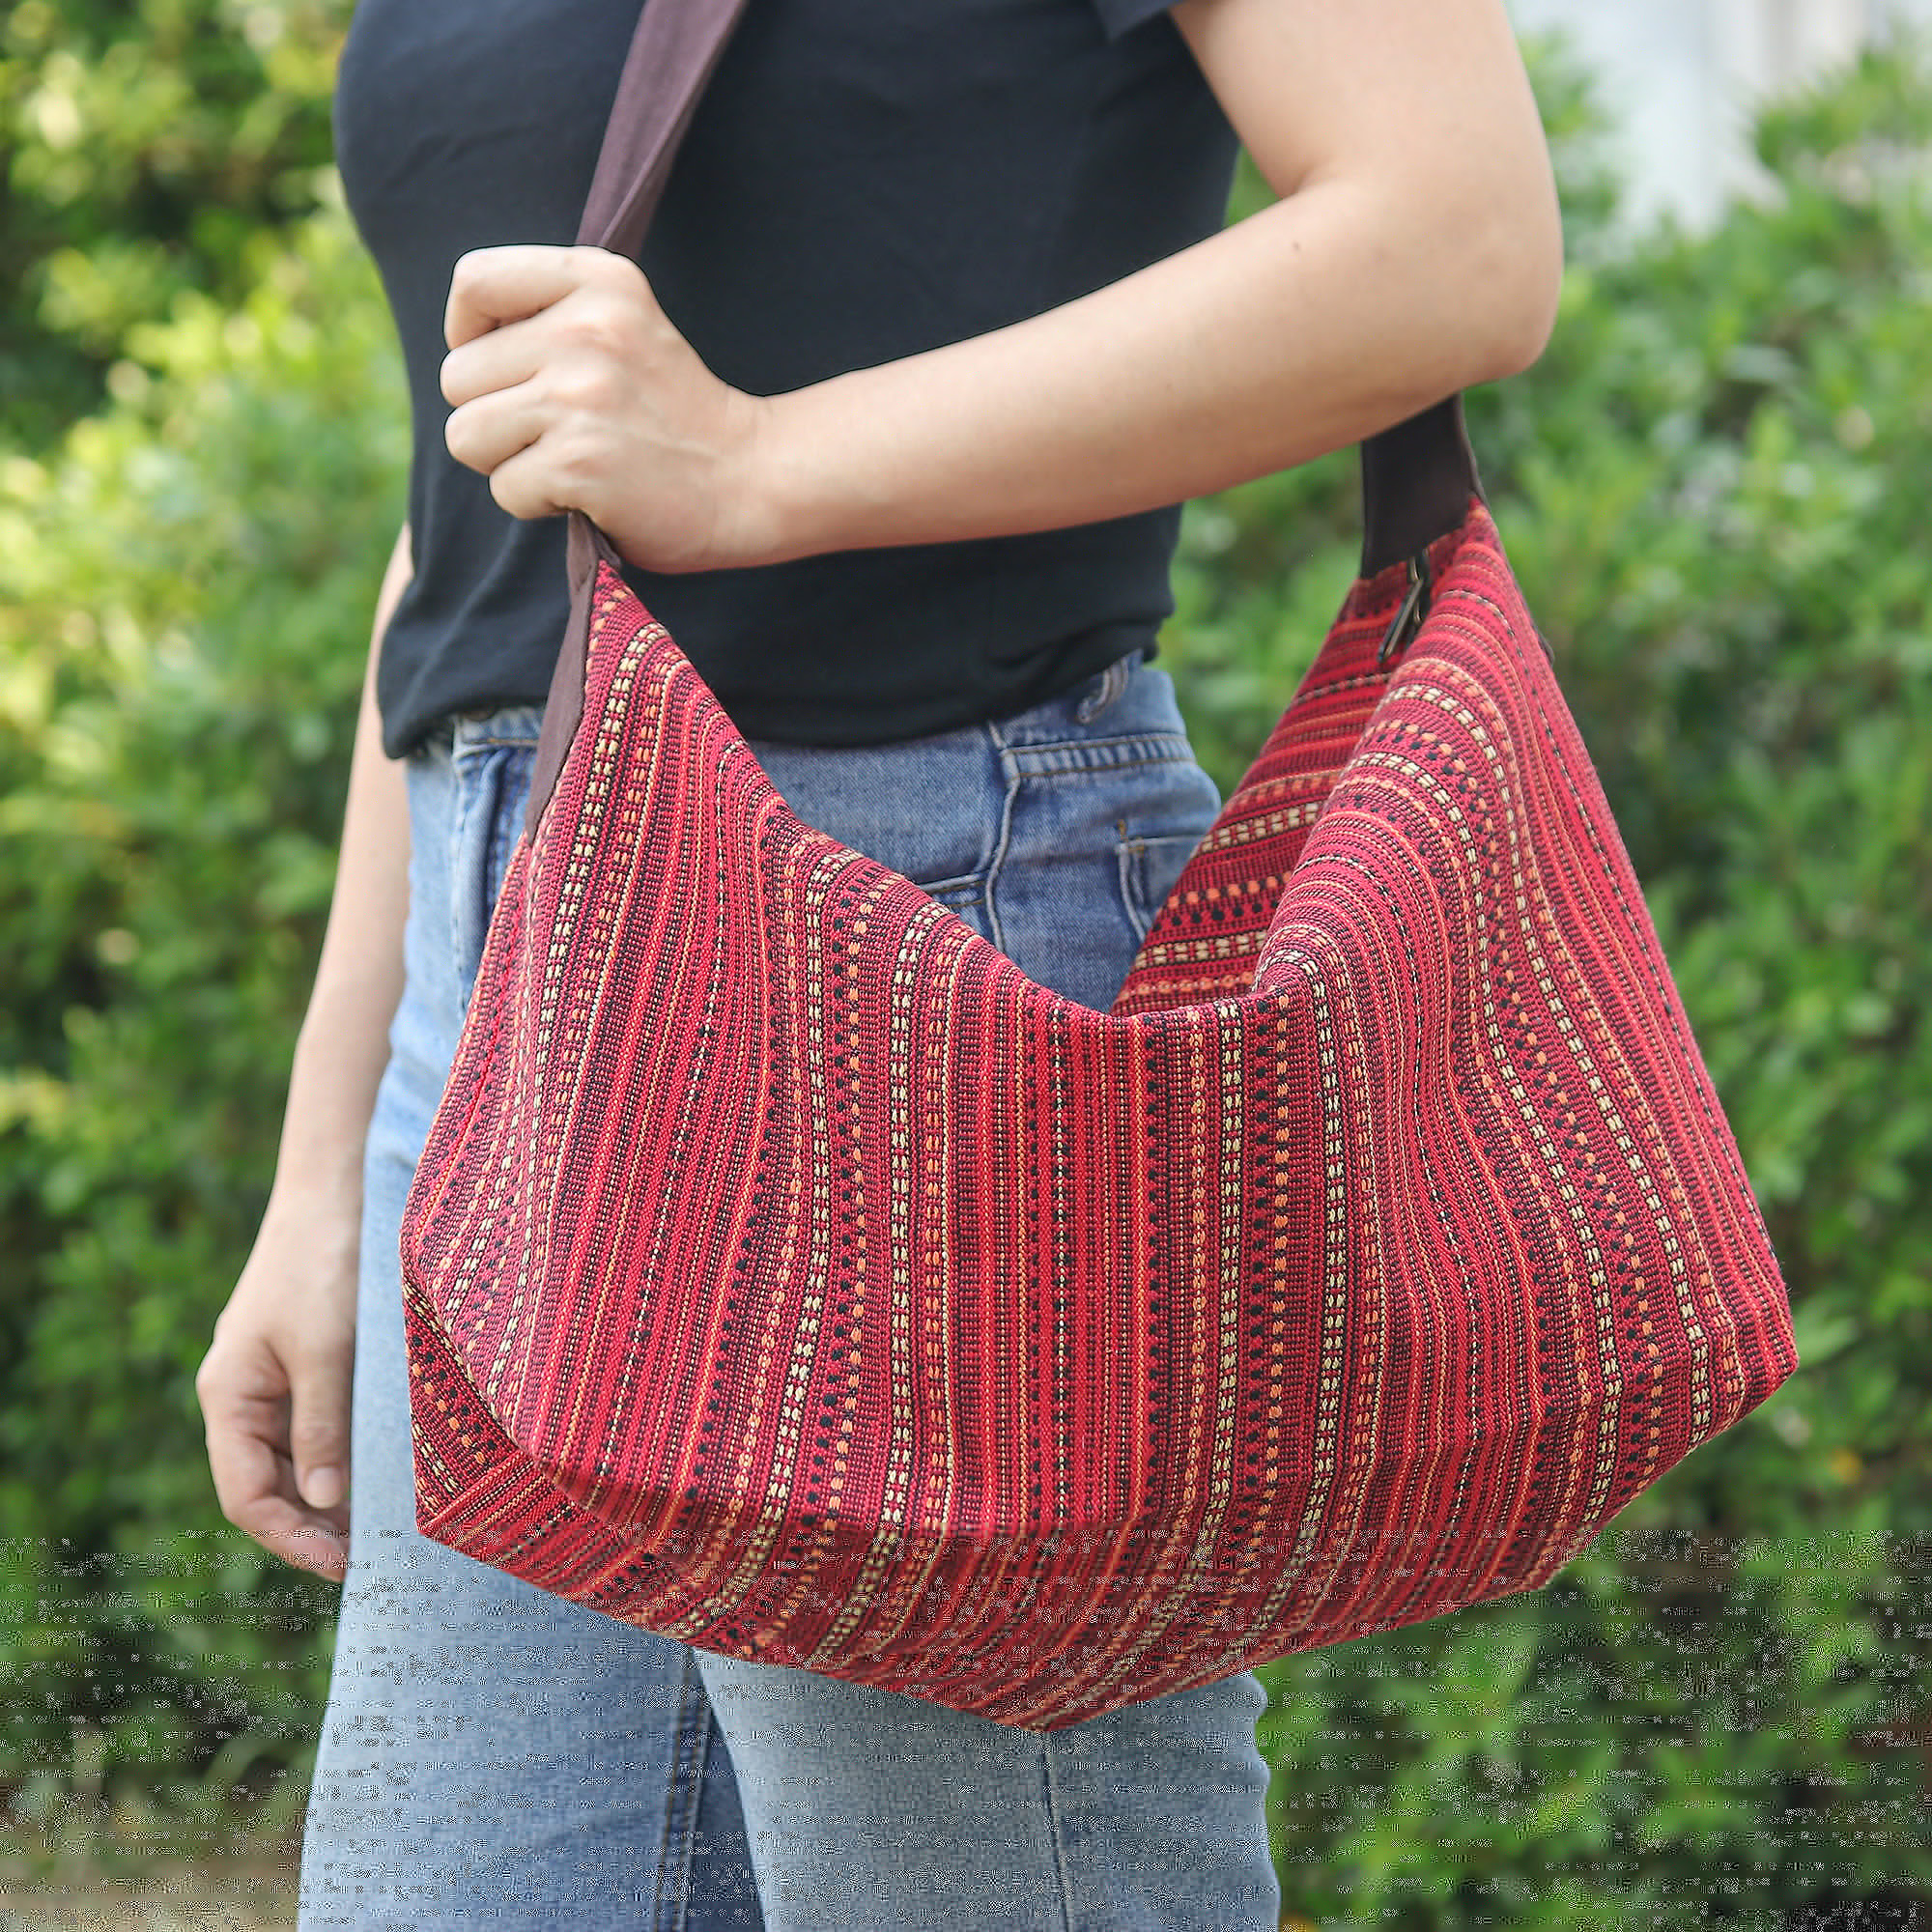 Hobo-Handtasche aus Baumwolle - Thailändische handgewebte Hobo-Geldbörse aus roter Baumwolle